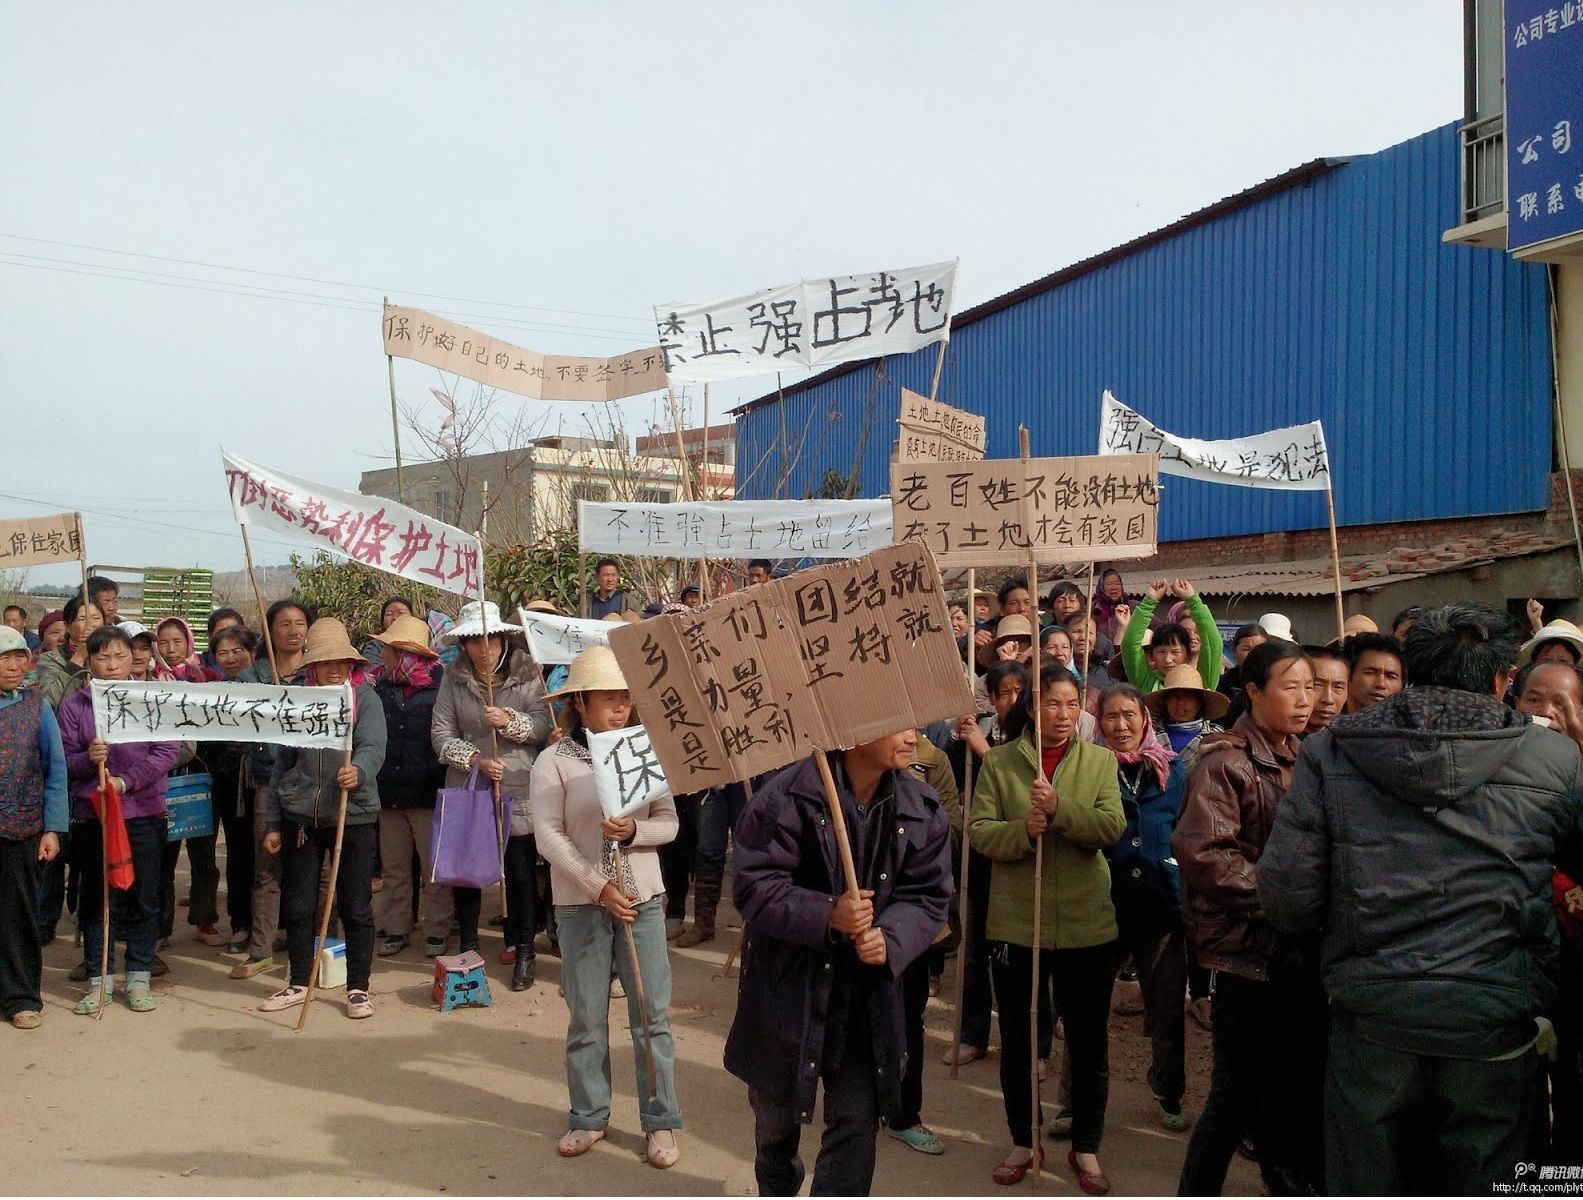 Enteignung für eine Touristenattraktion – Ein chinesisches Dorf protestiert